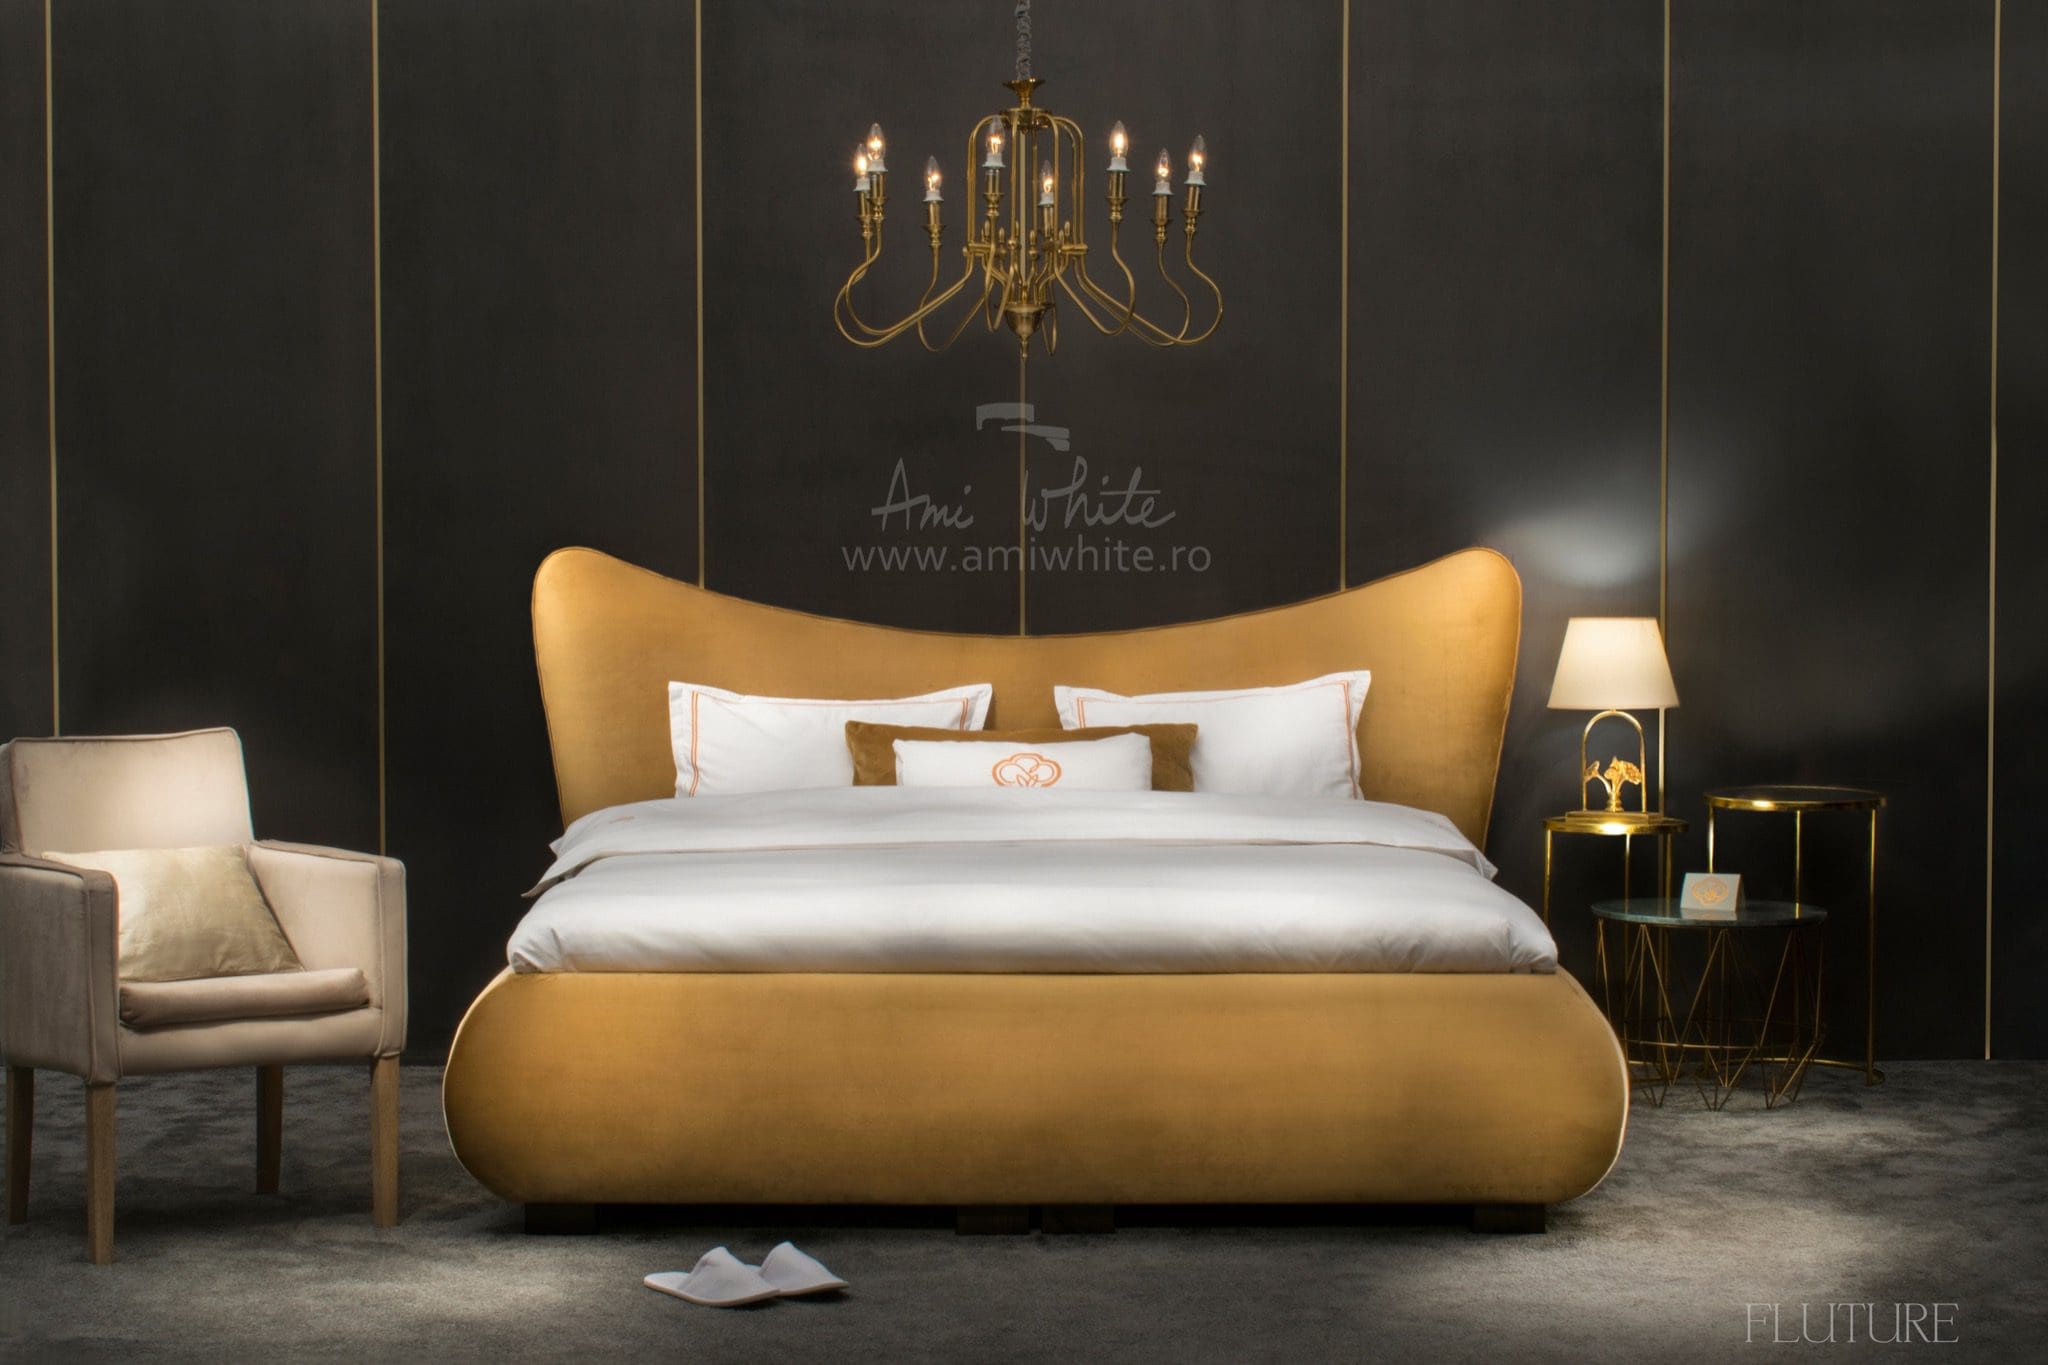 FLUTURE copy - Ami White, excelență în realizarea paturilor de lux apreciate la nivel internațional